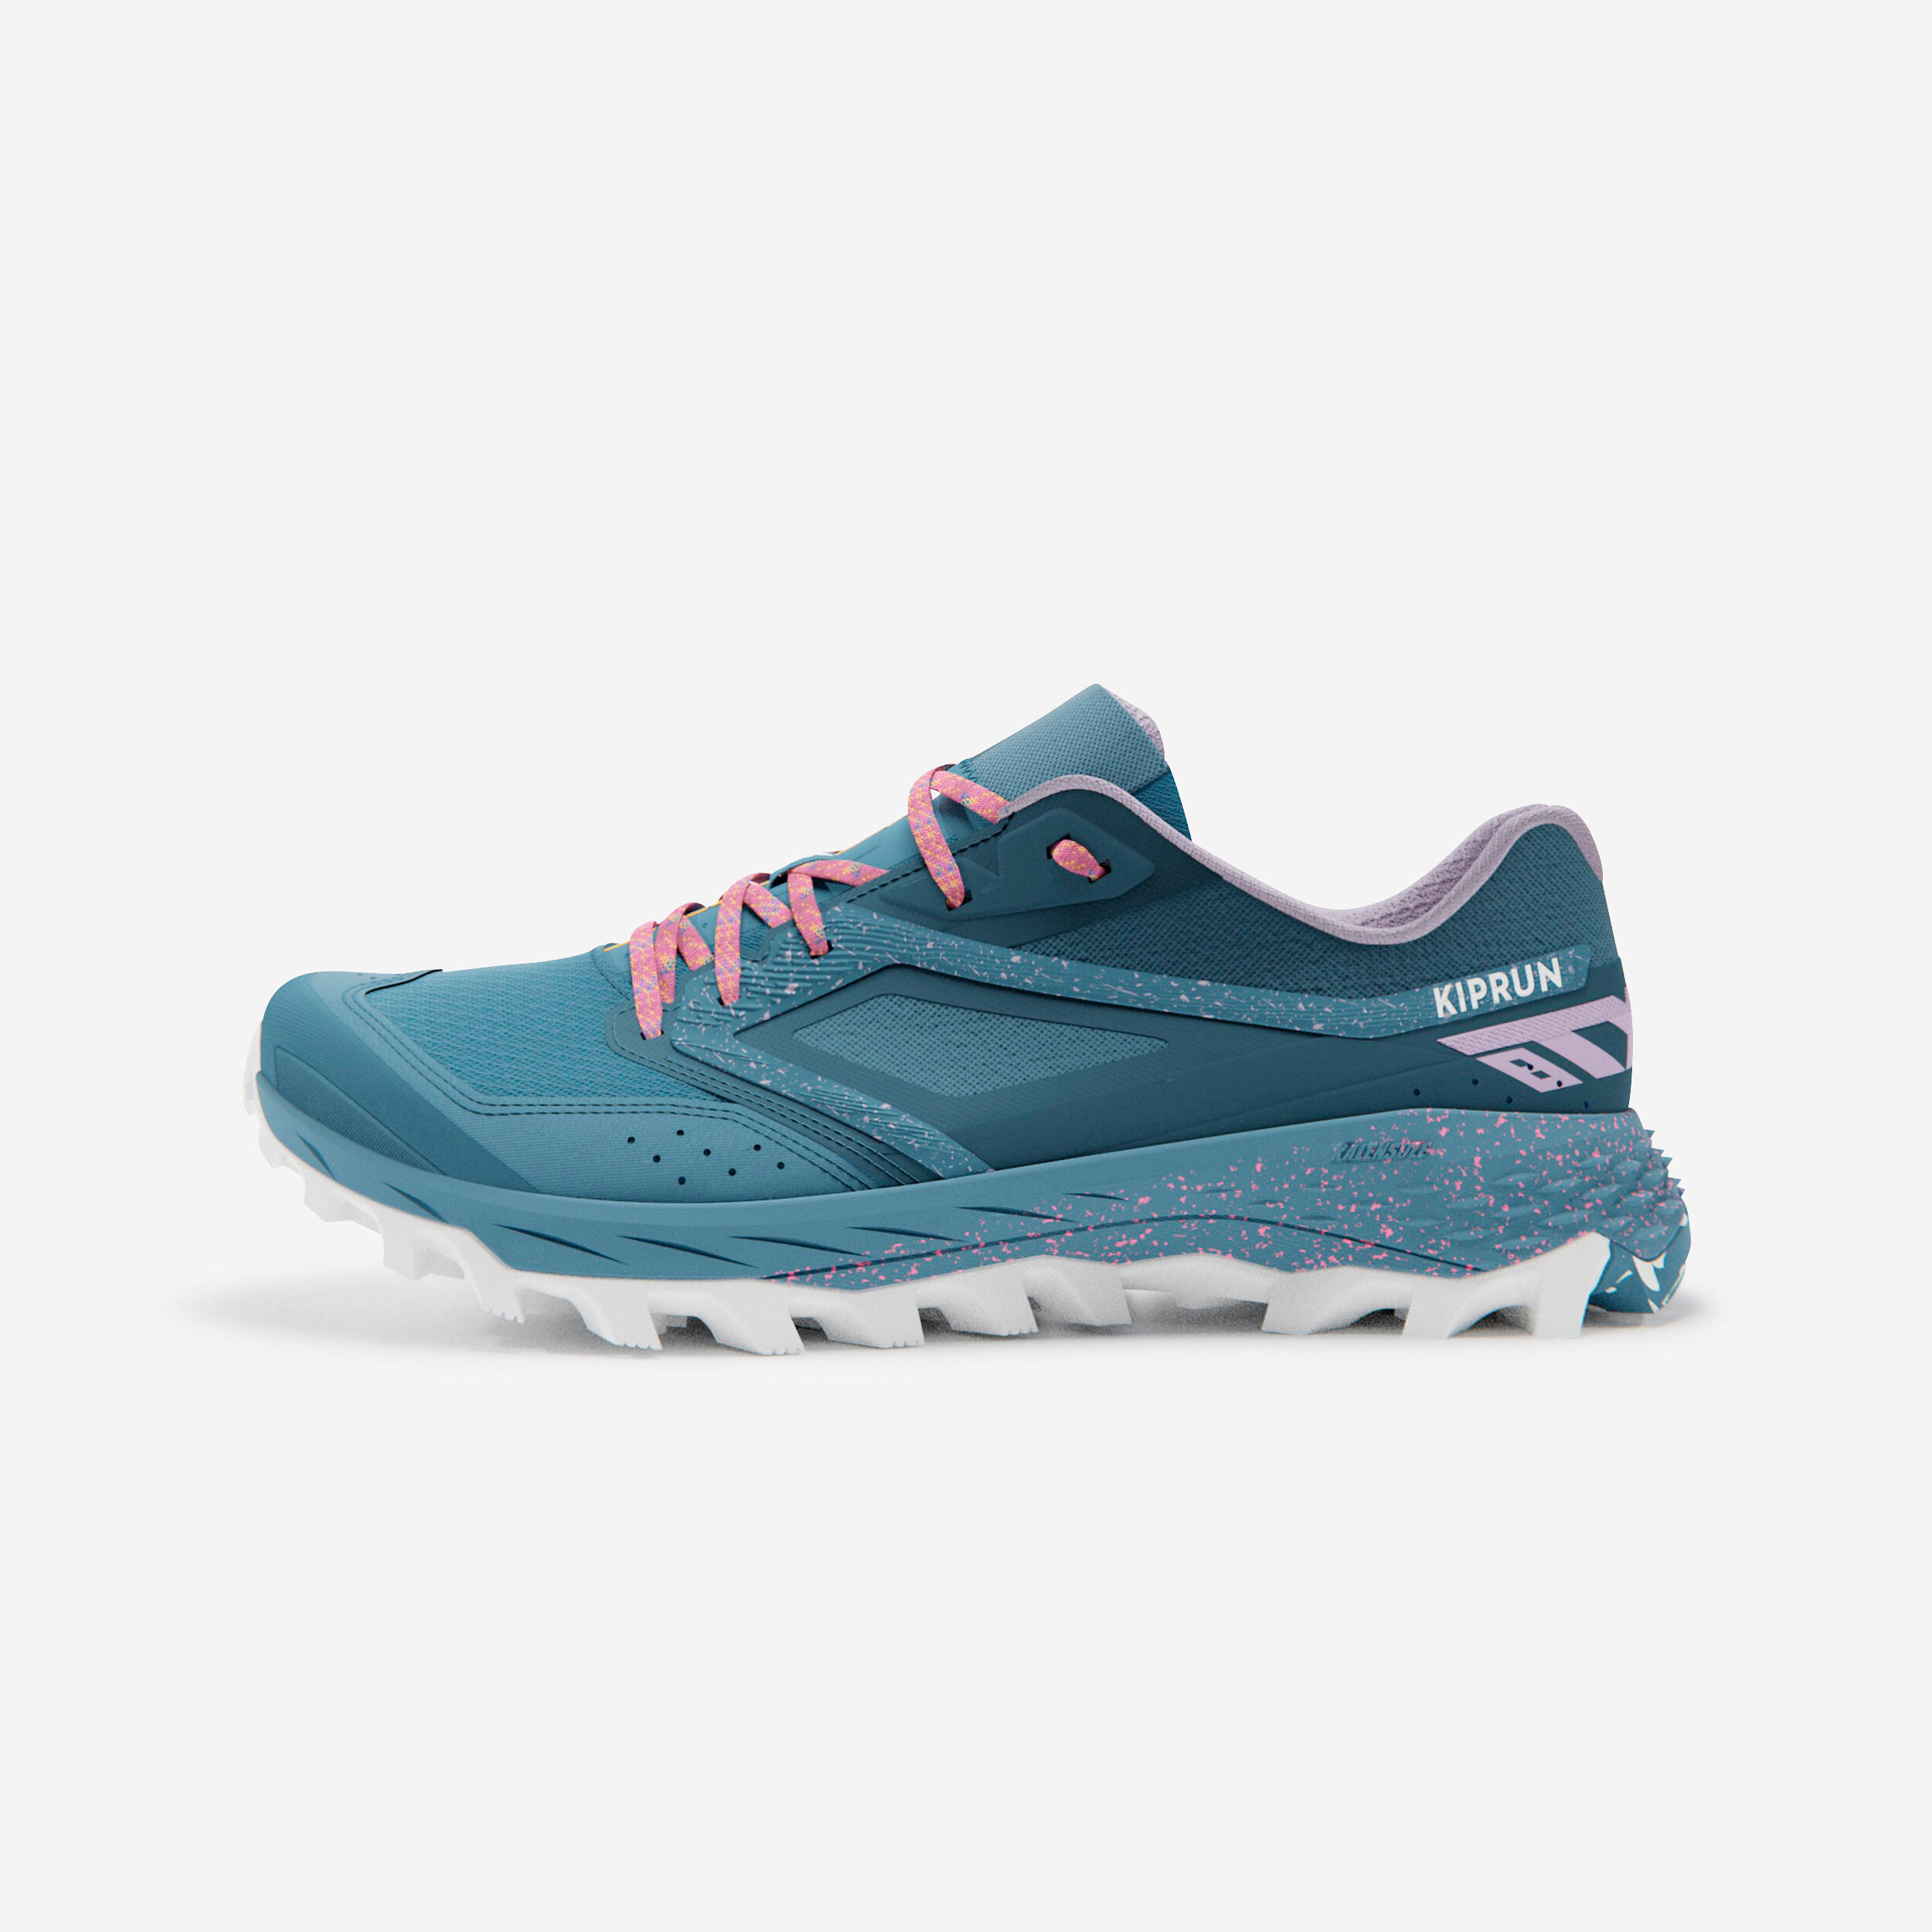 Kalenji KipRun Long Decathlon Shoes Women's Size 8 Coral Blue Running Gym  Shoes